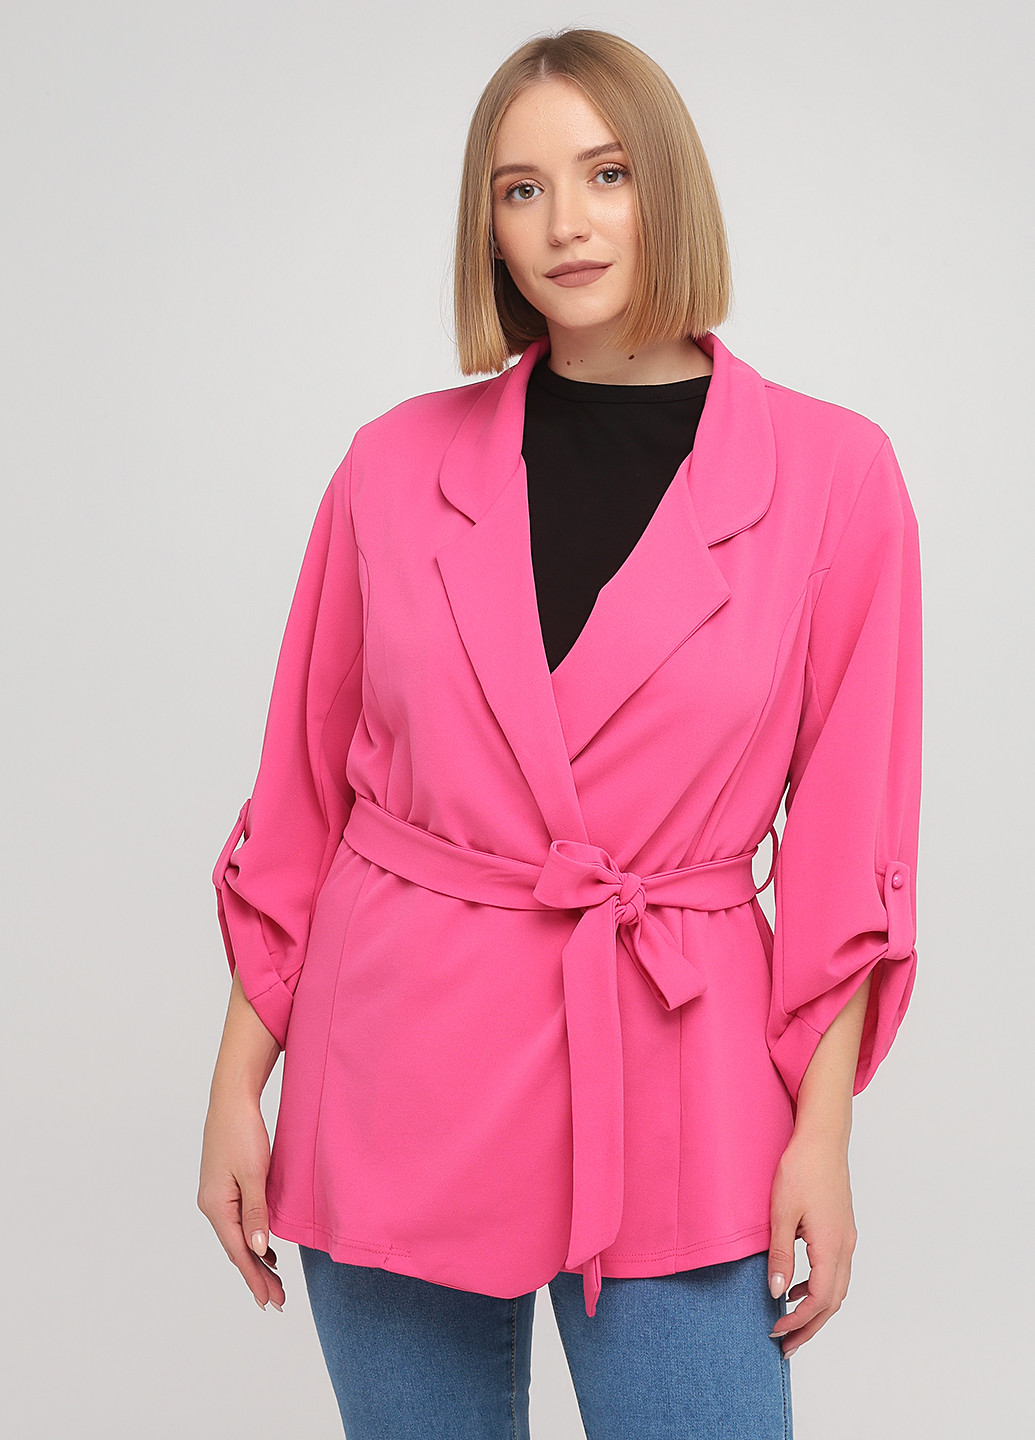 Розовый женский жакет New look. однотонный - демисезонный